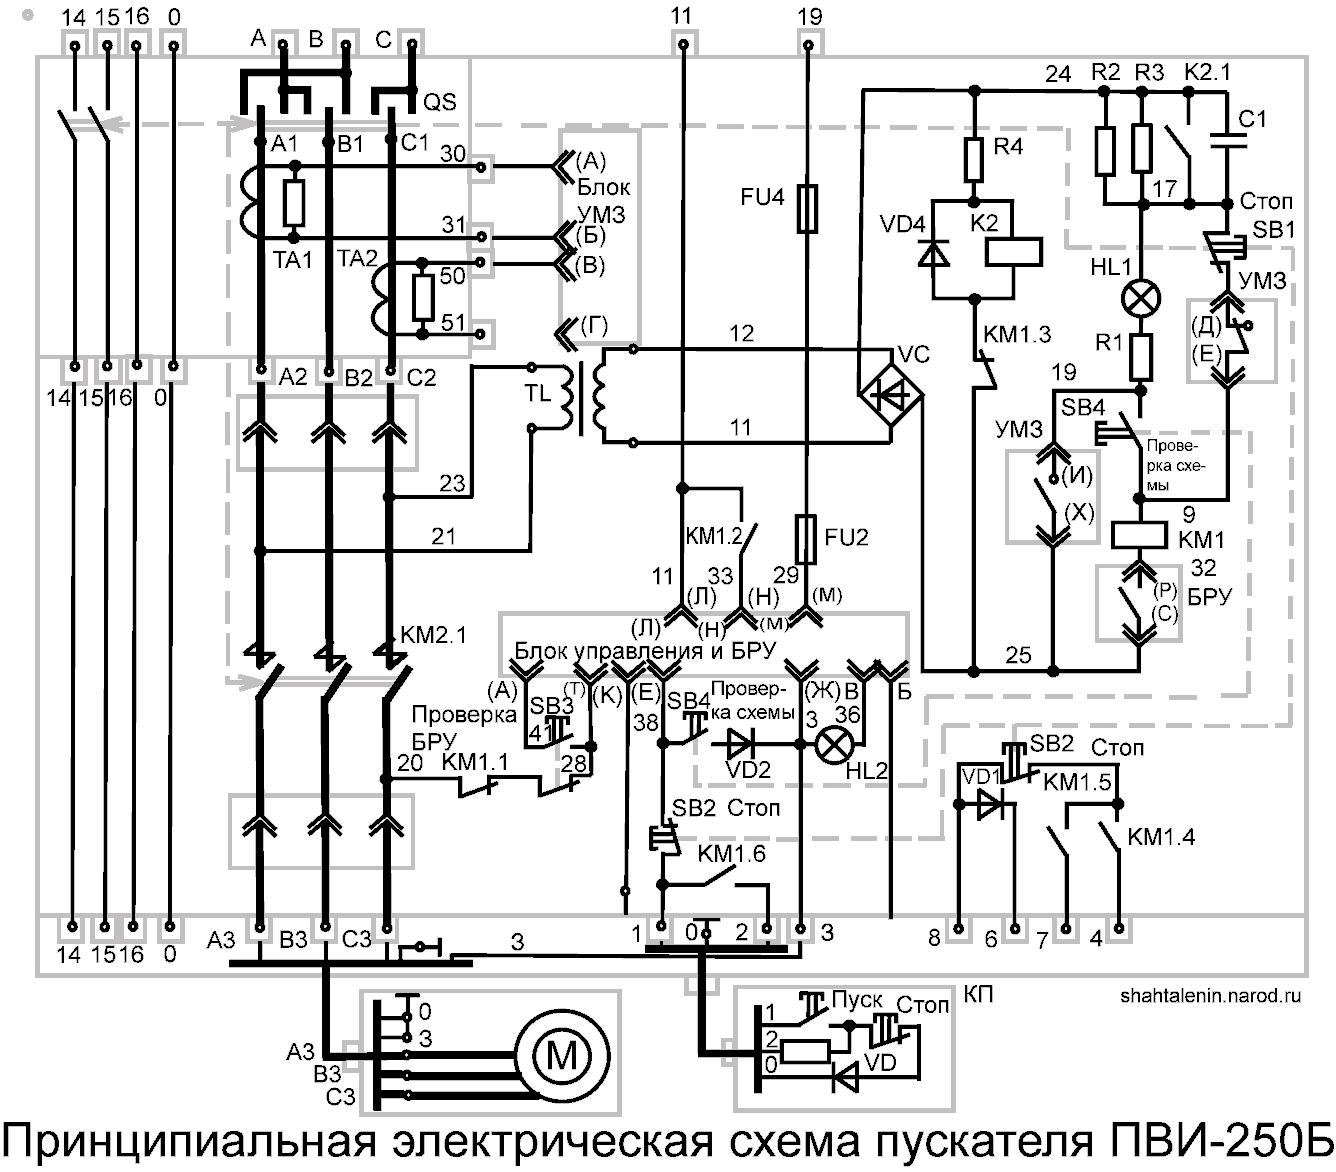 Схема электрическая принципиальная ПВИ-250Б